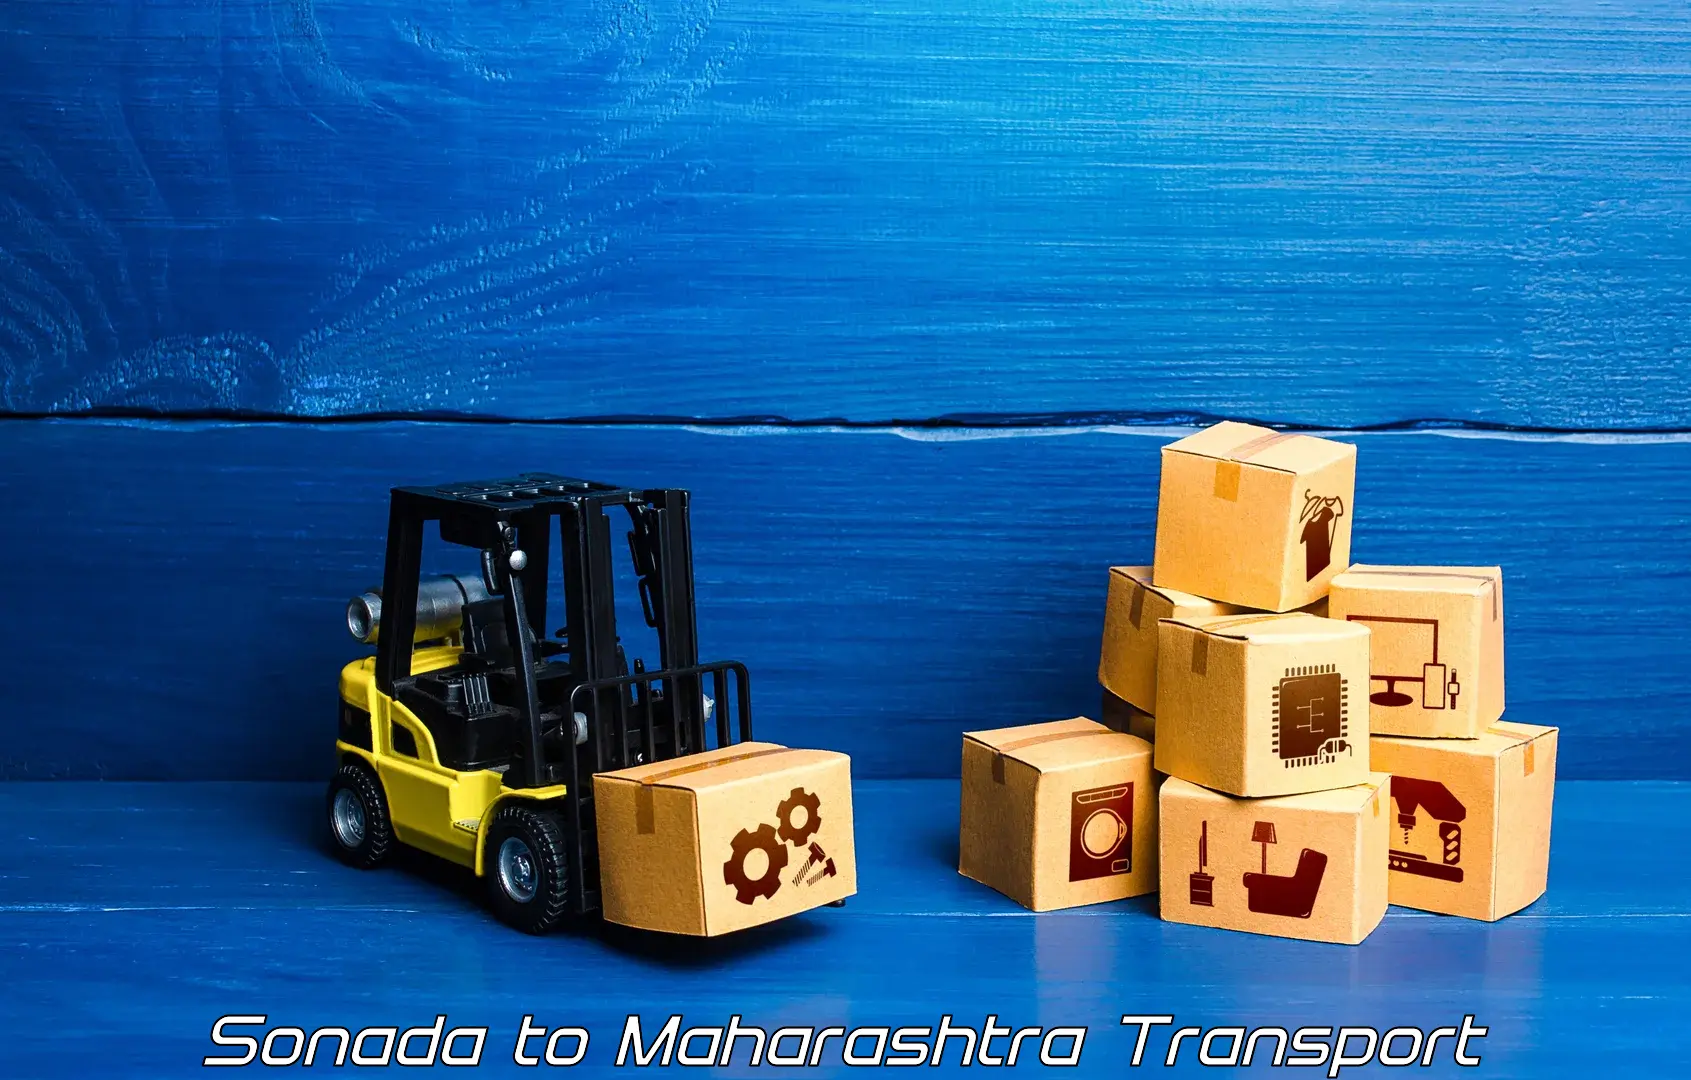 Two wheeler transport services Sonada to Maharashtra